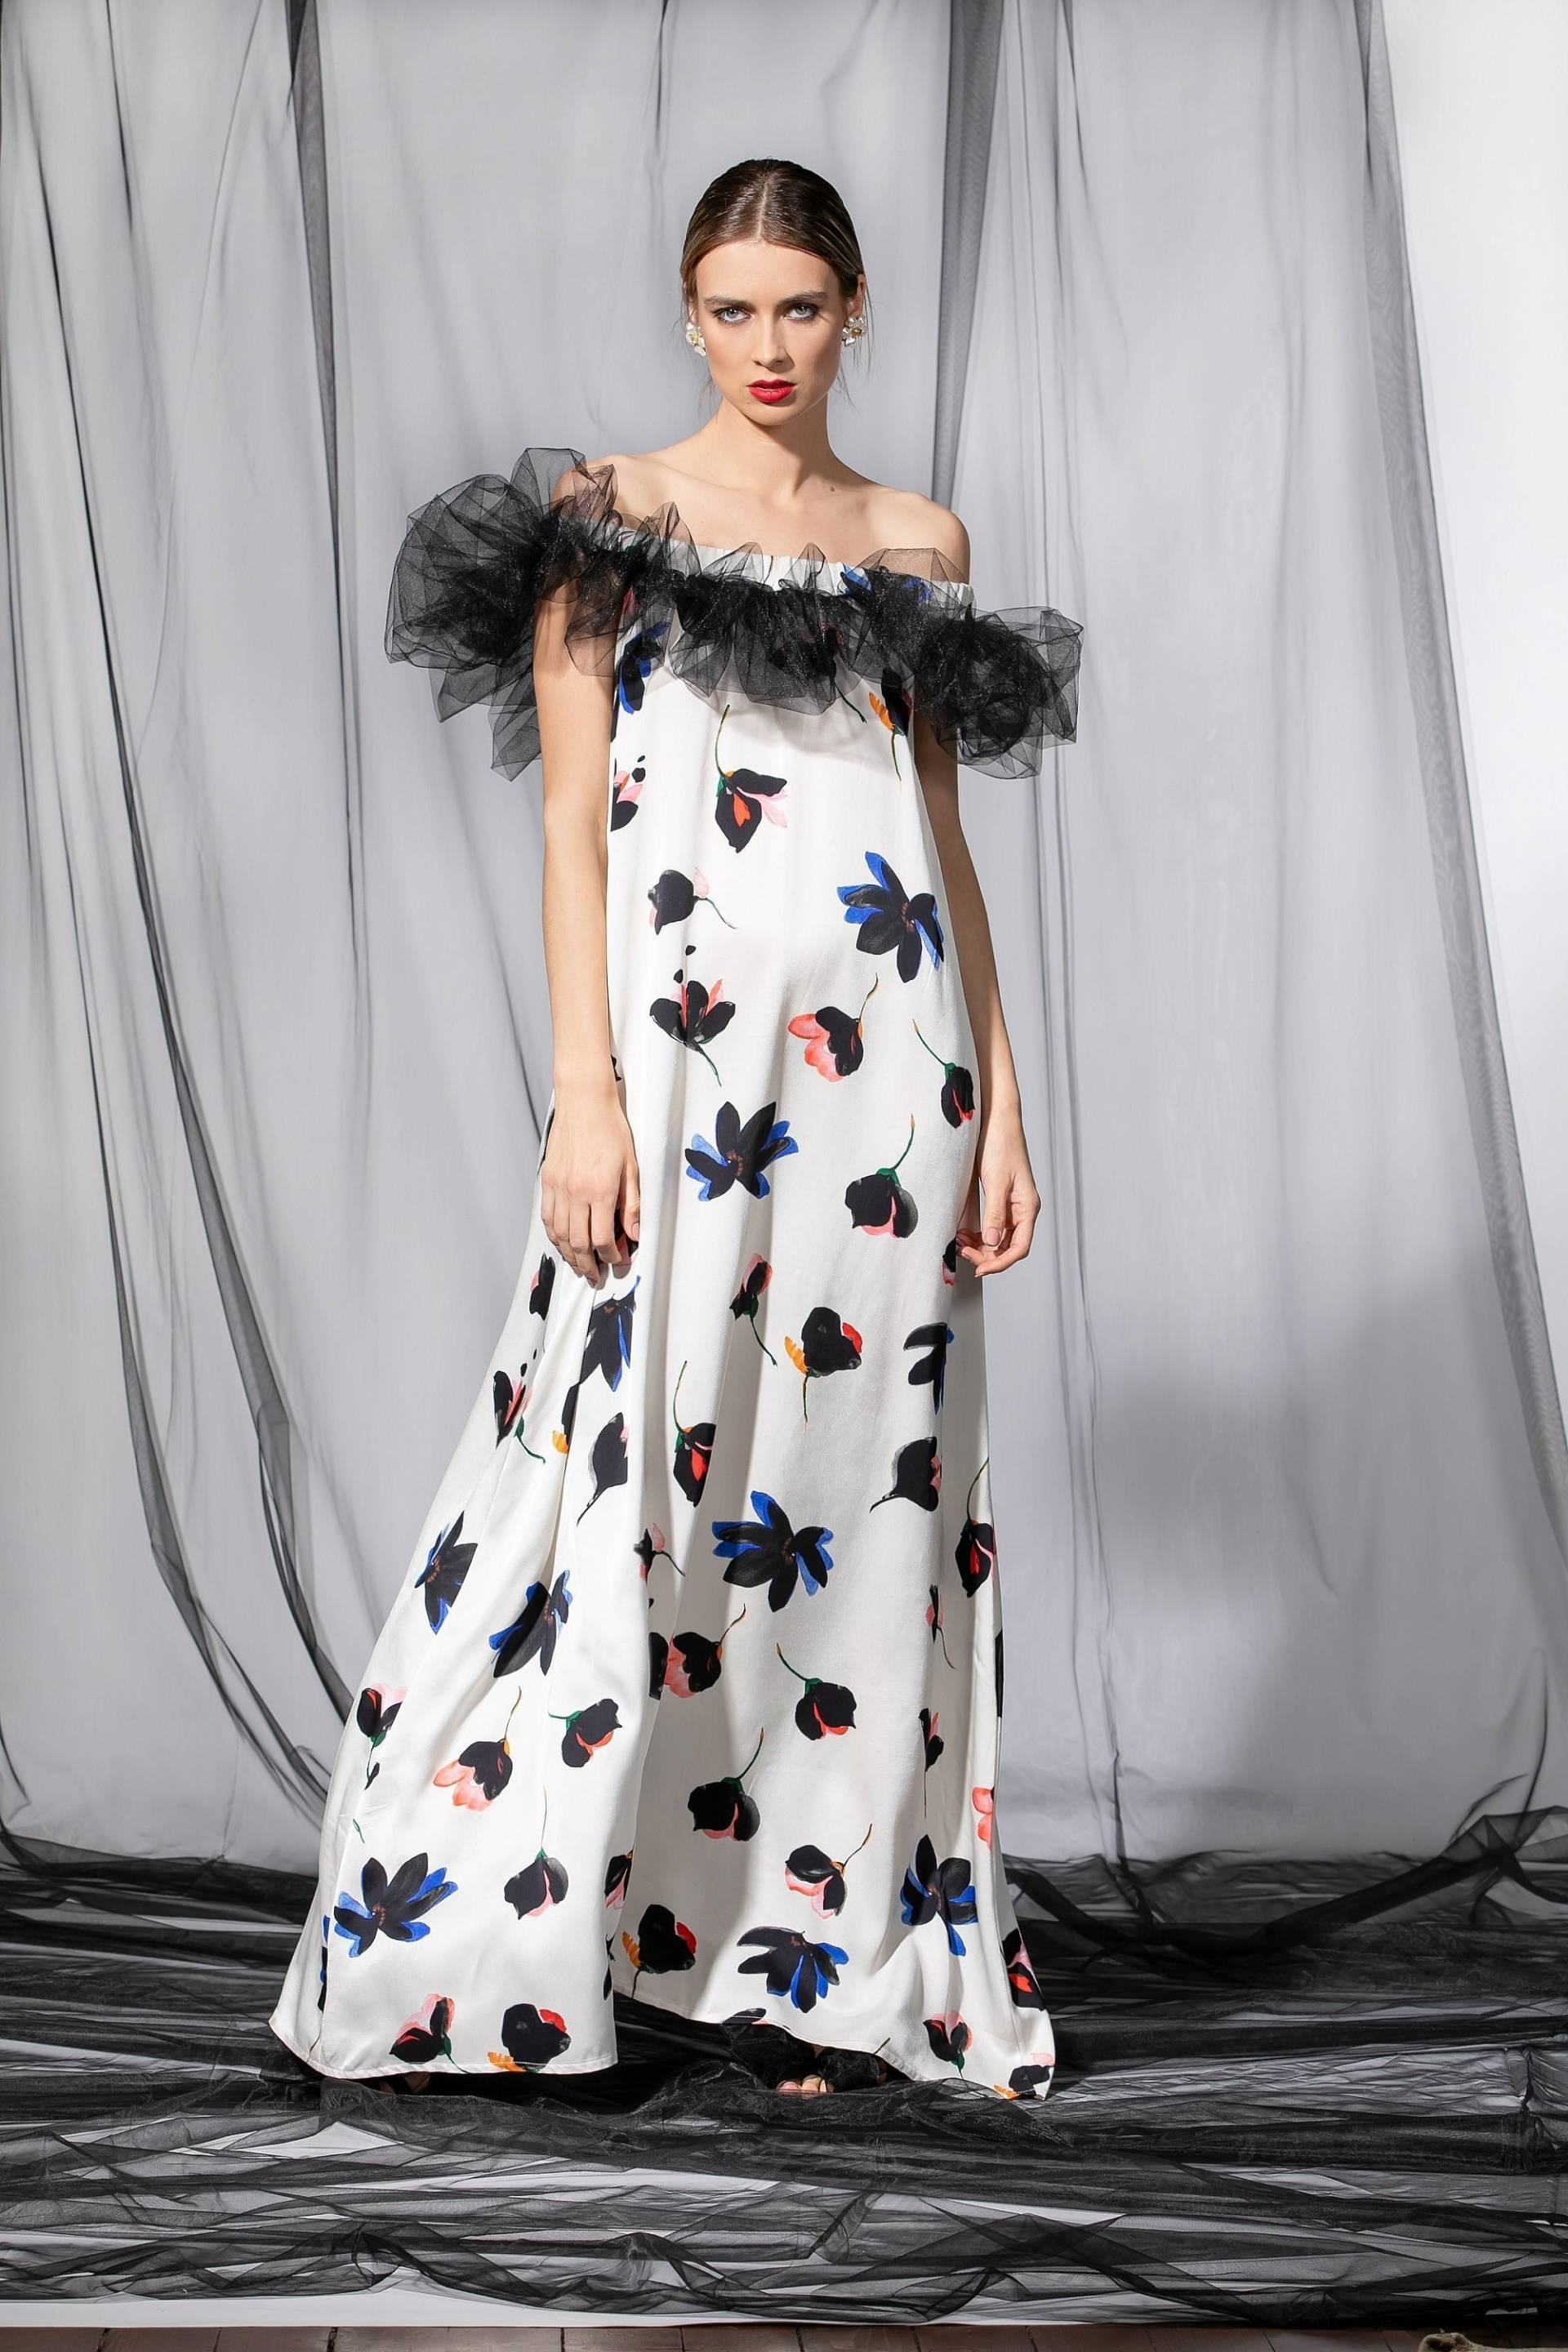 Rüschen Tüll Maxi Kleid in Floralen Muster, Off-The-Shoulder Kleid, Florales Partykleid, Extravagantes Abendkleid, Plus Size Cocktailkleid von cherryblossomsdress